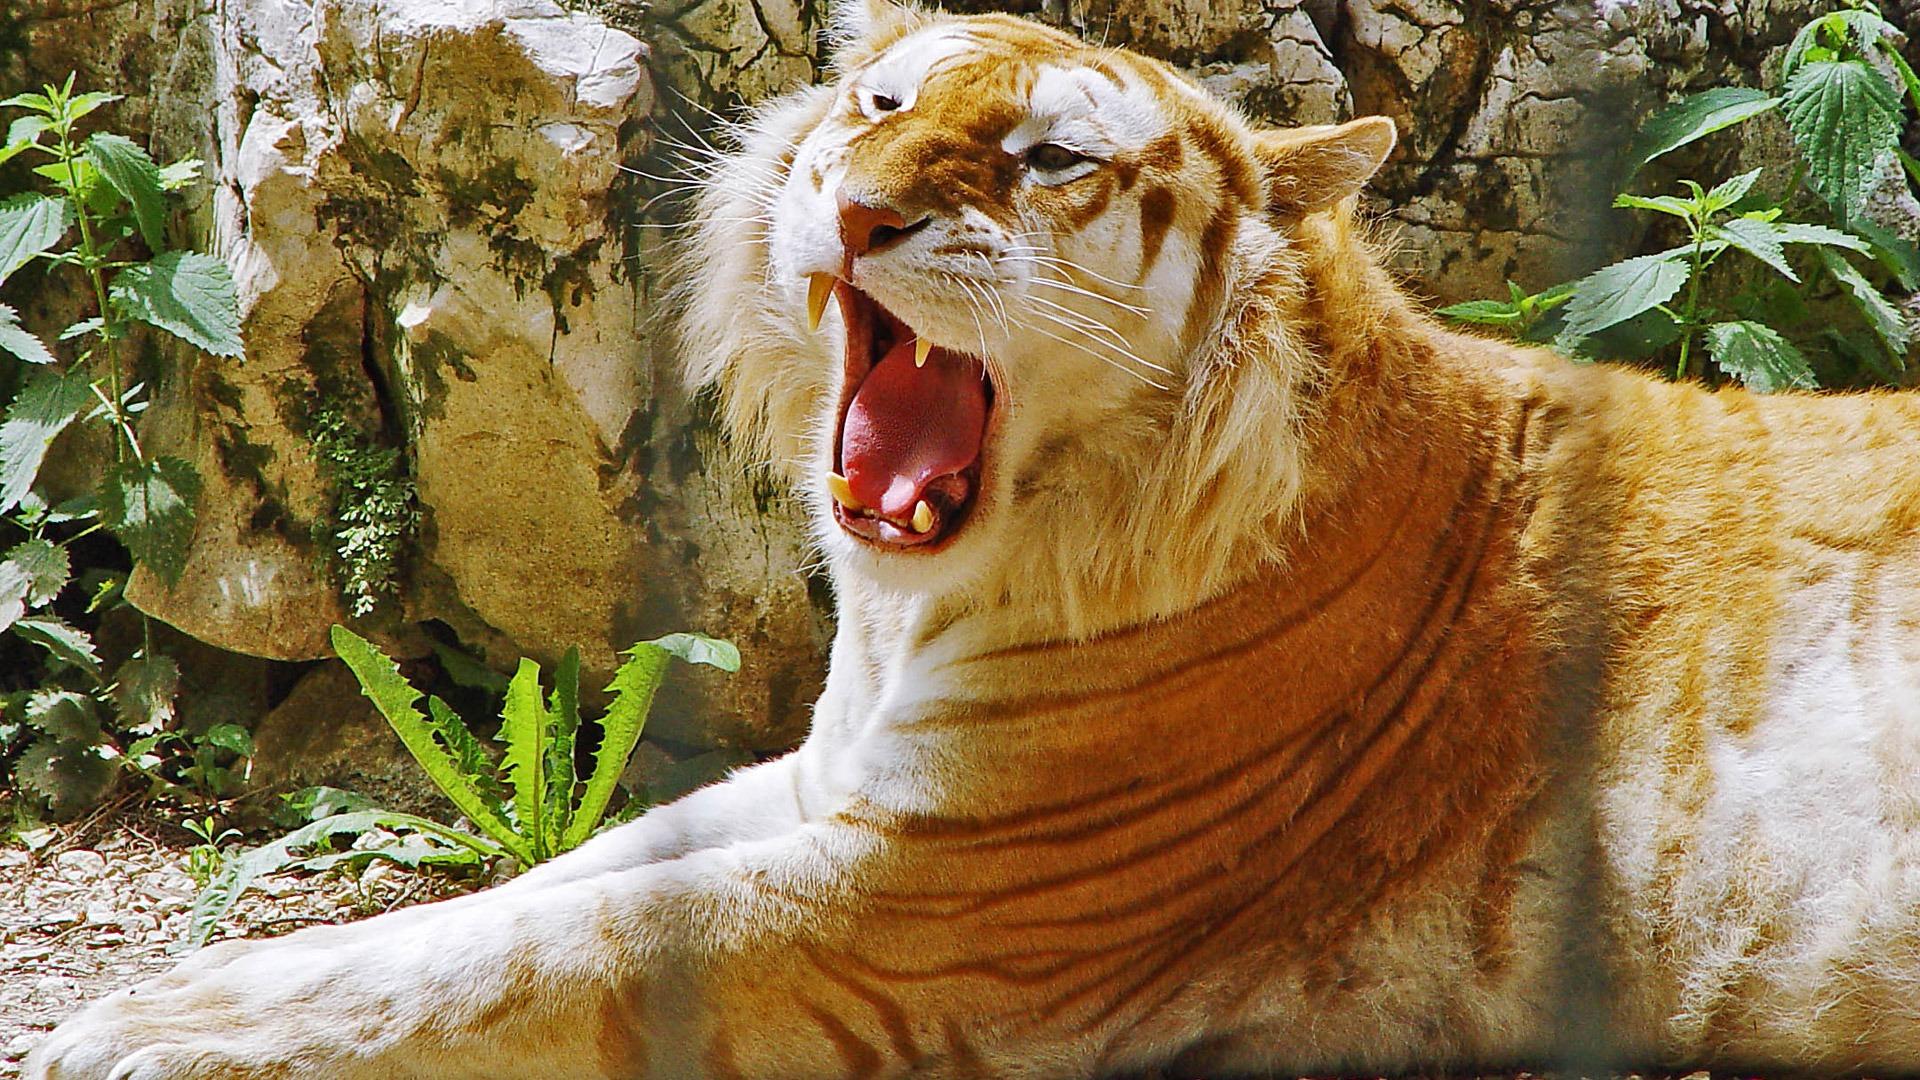 Golden Tiger Wallpaper Tigers Animals Wallpaper in jpg